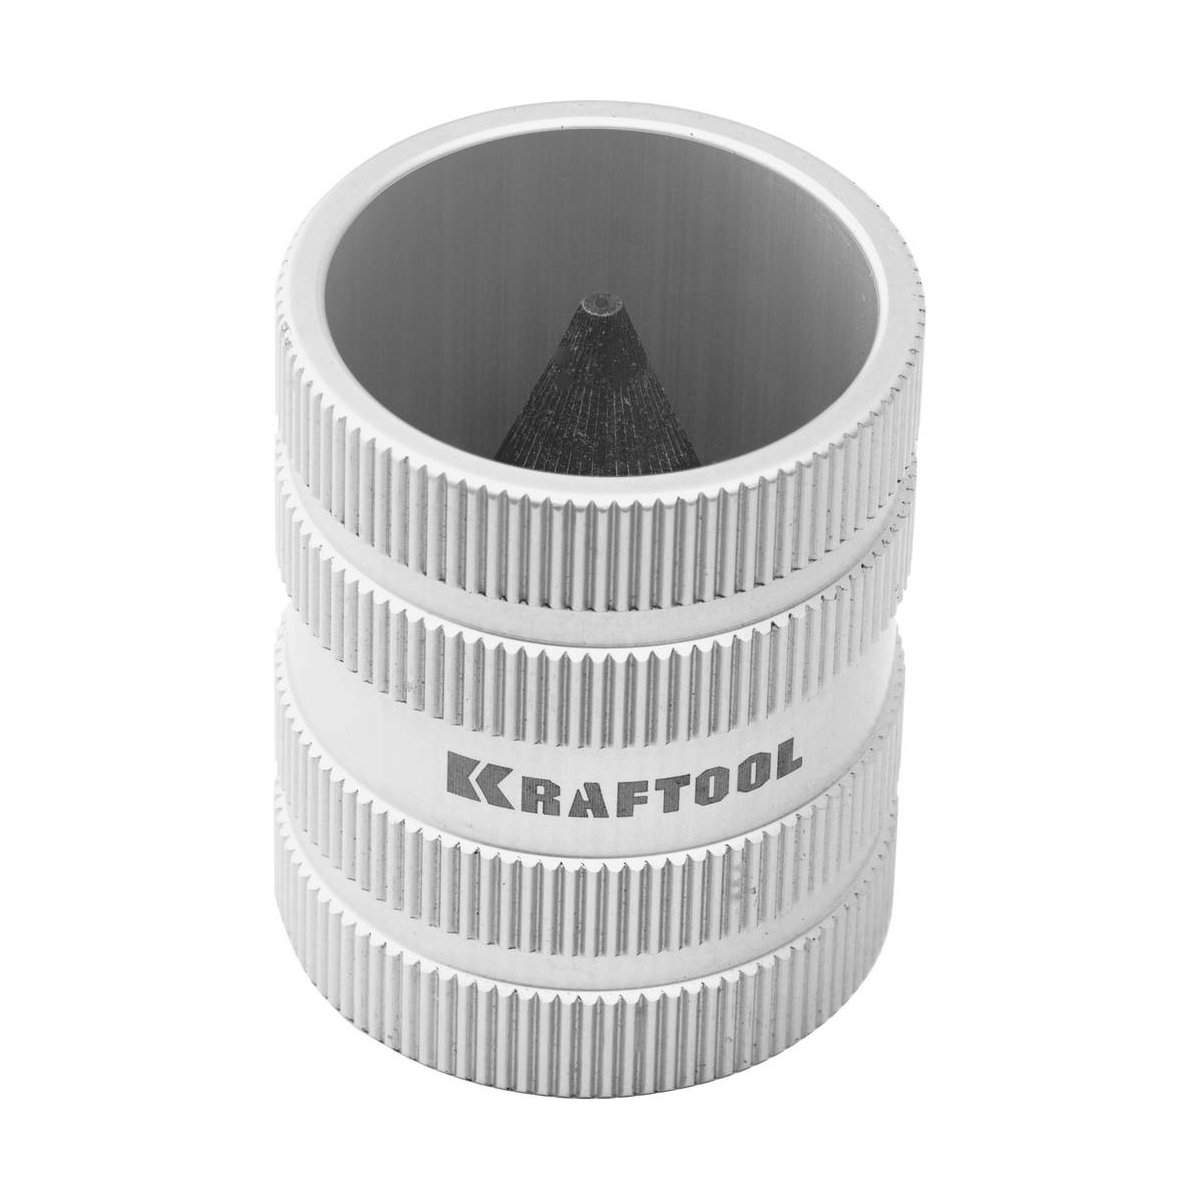 KRAFTOOL диаметр трубы 8-35 мм, фаскосниматель универсальный EXPERT 23790-35